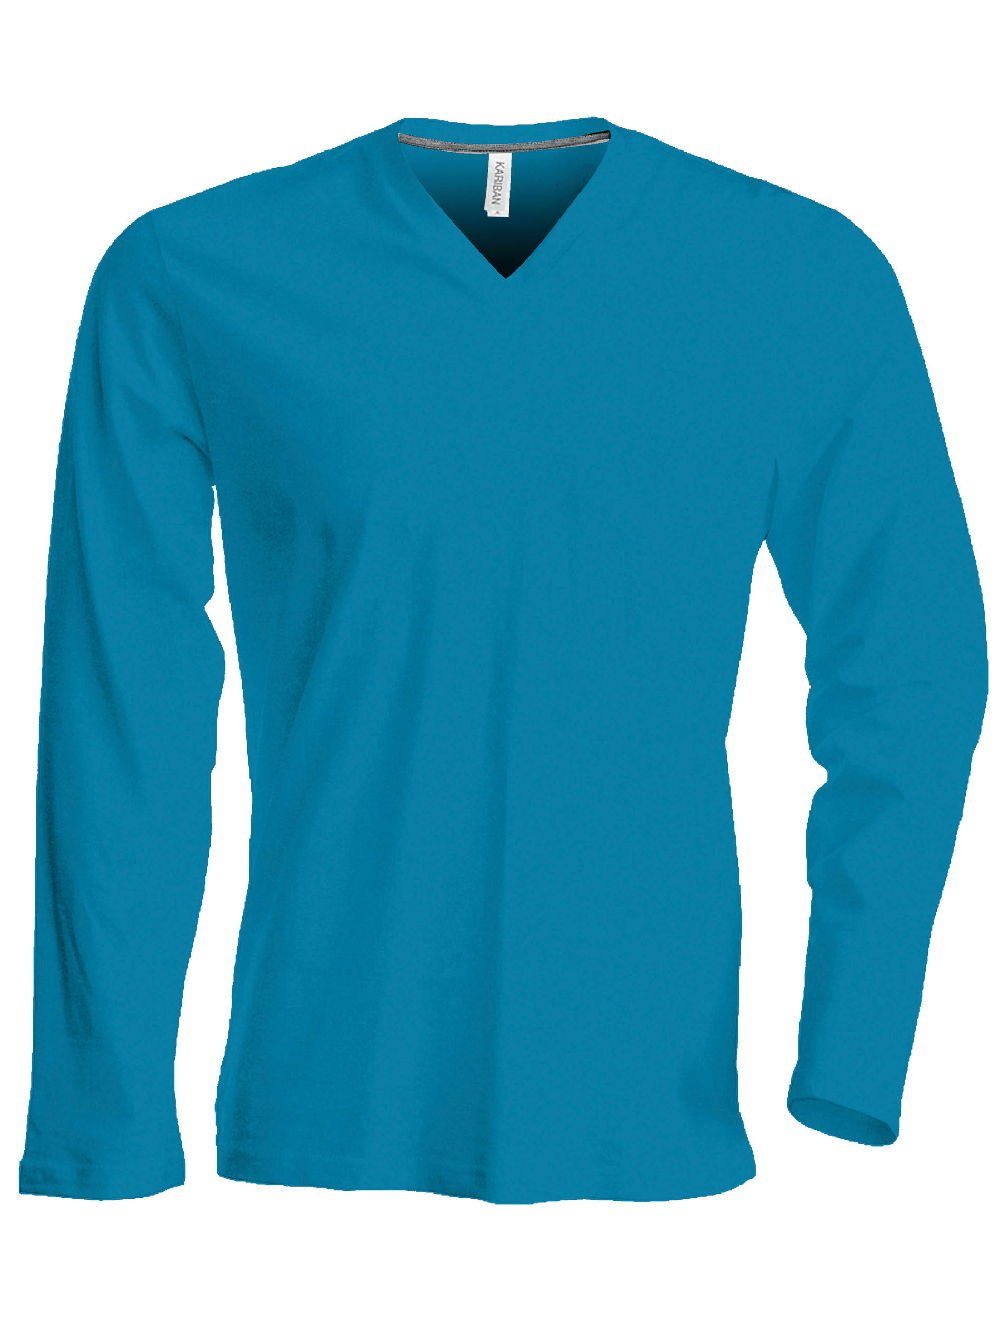 blue Kariban langarm T-Shirt Rundhalsshirt K358 enzymgewaschen Kariban Herren V-Neck